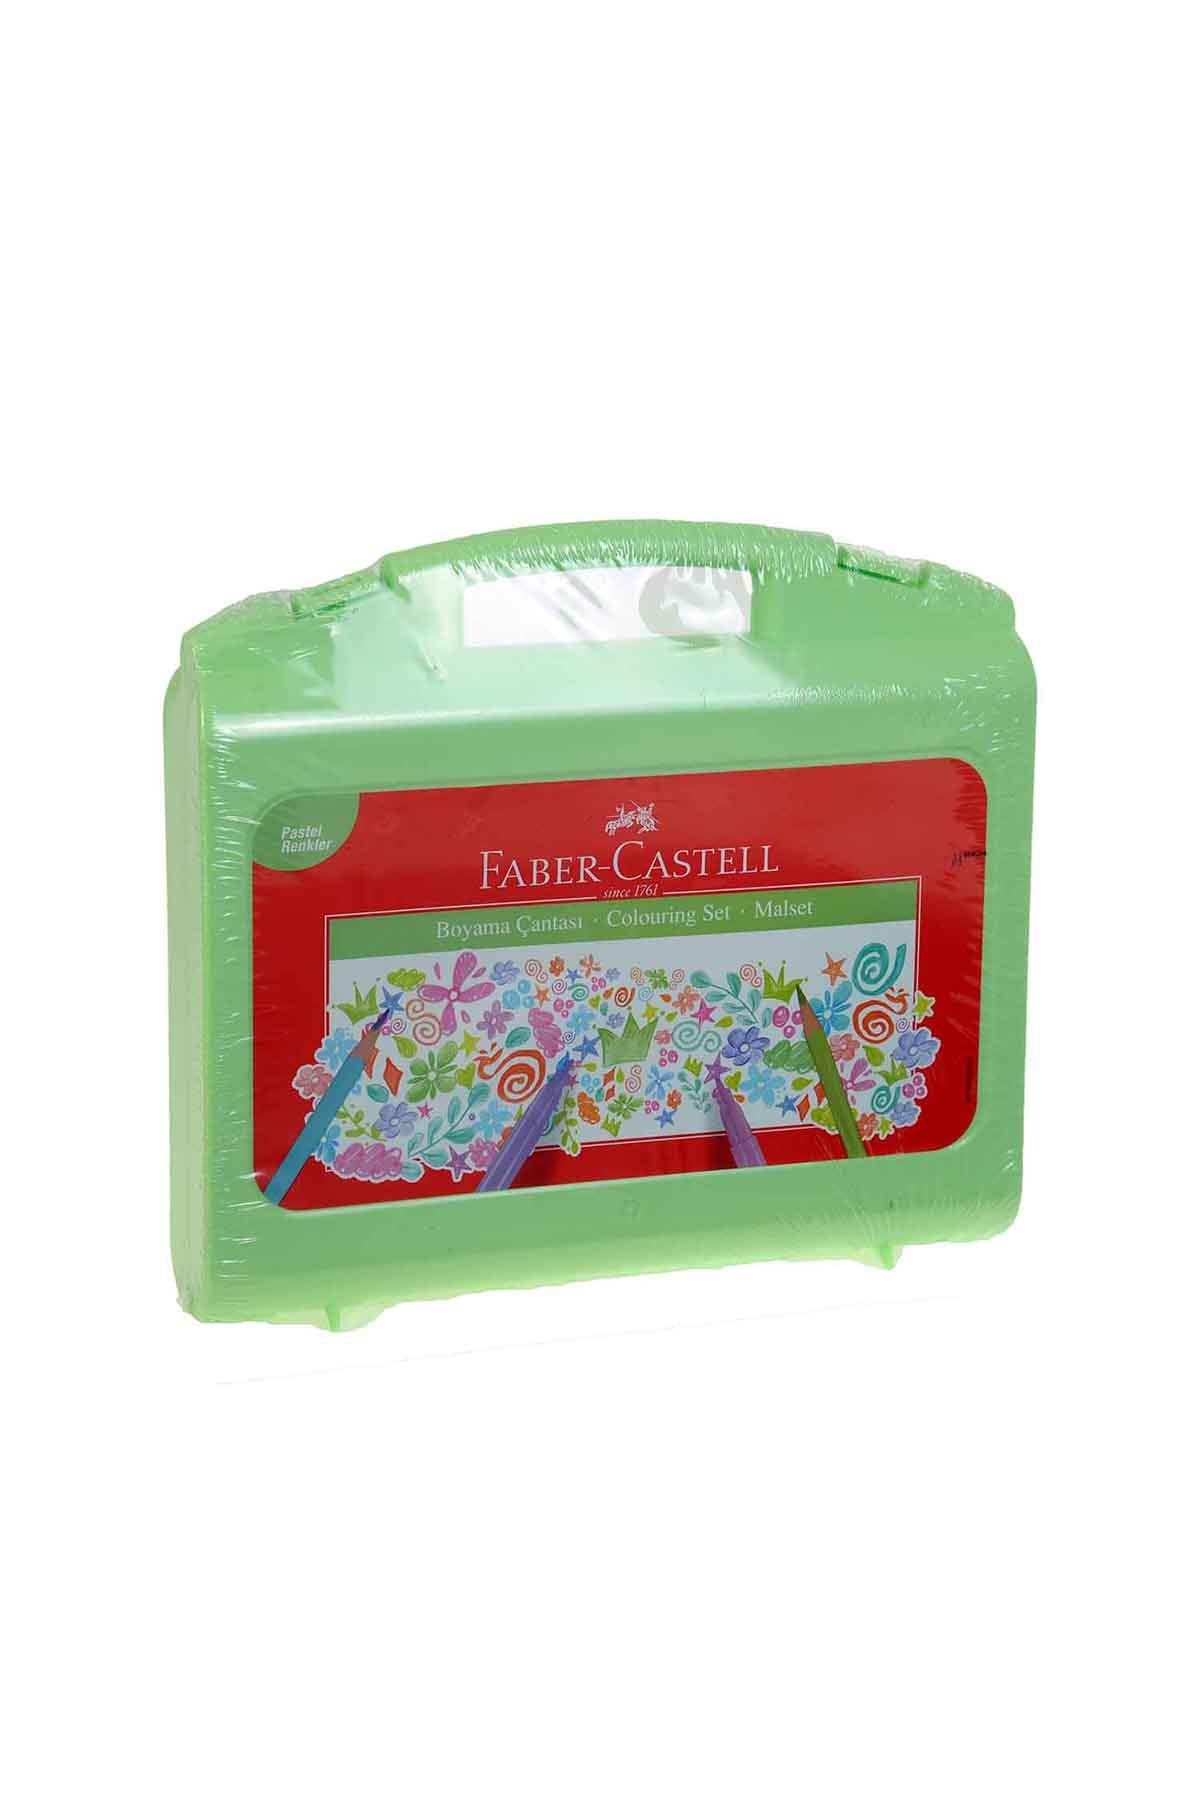 Faber Castel Boyama Çantası Pastel Renk